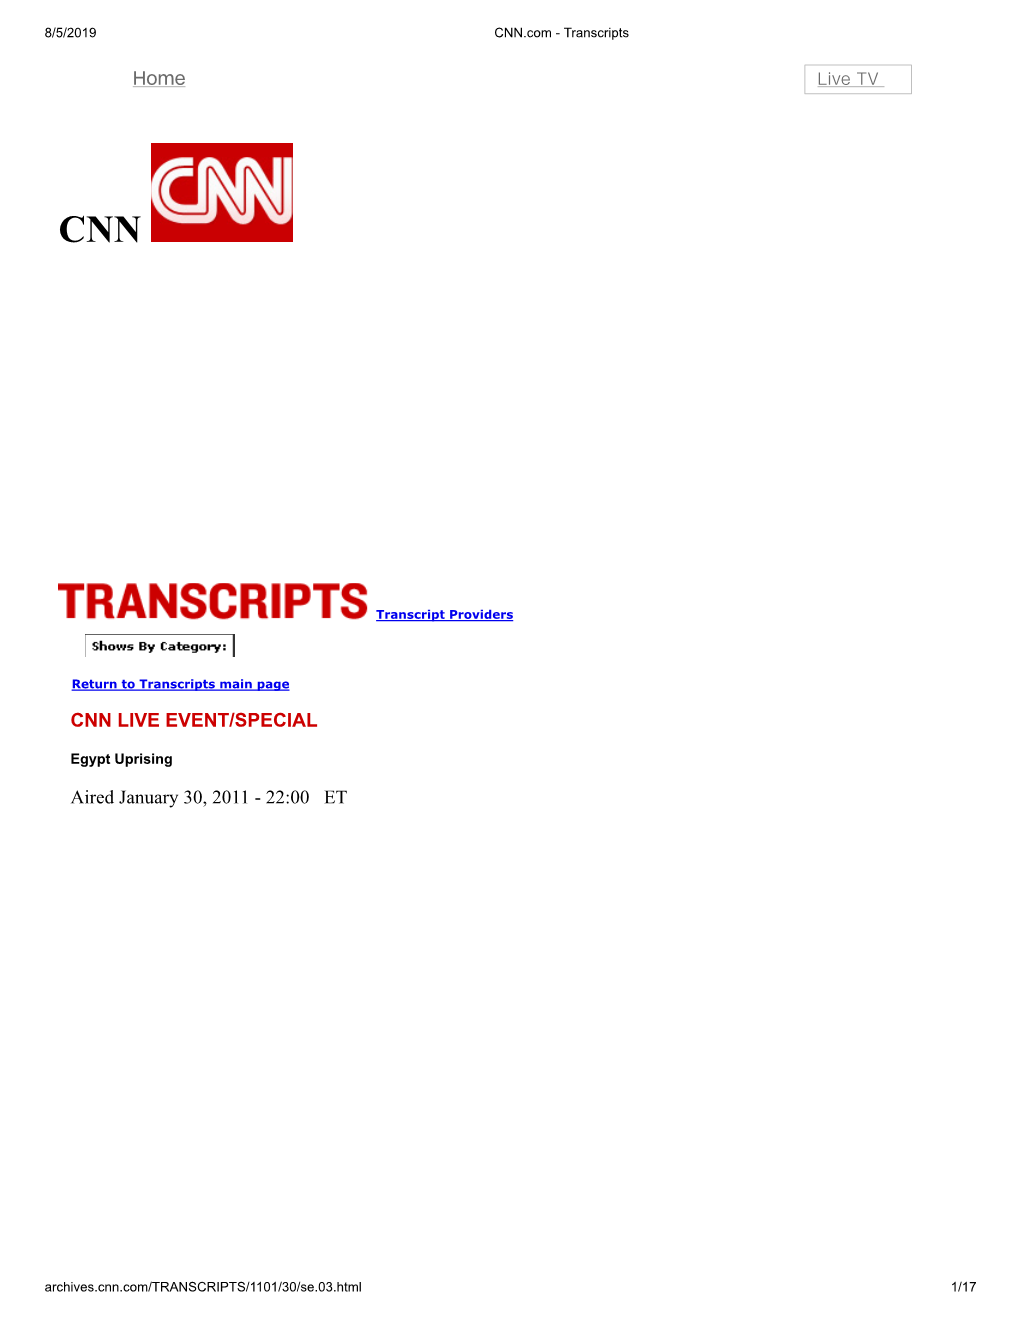 CNN.Com - Transcripts